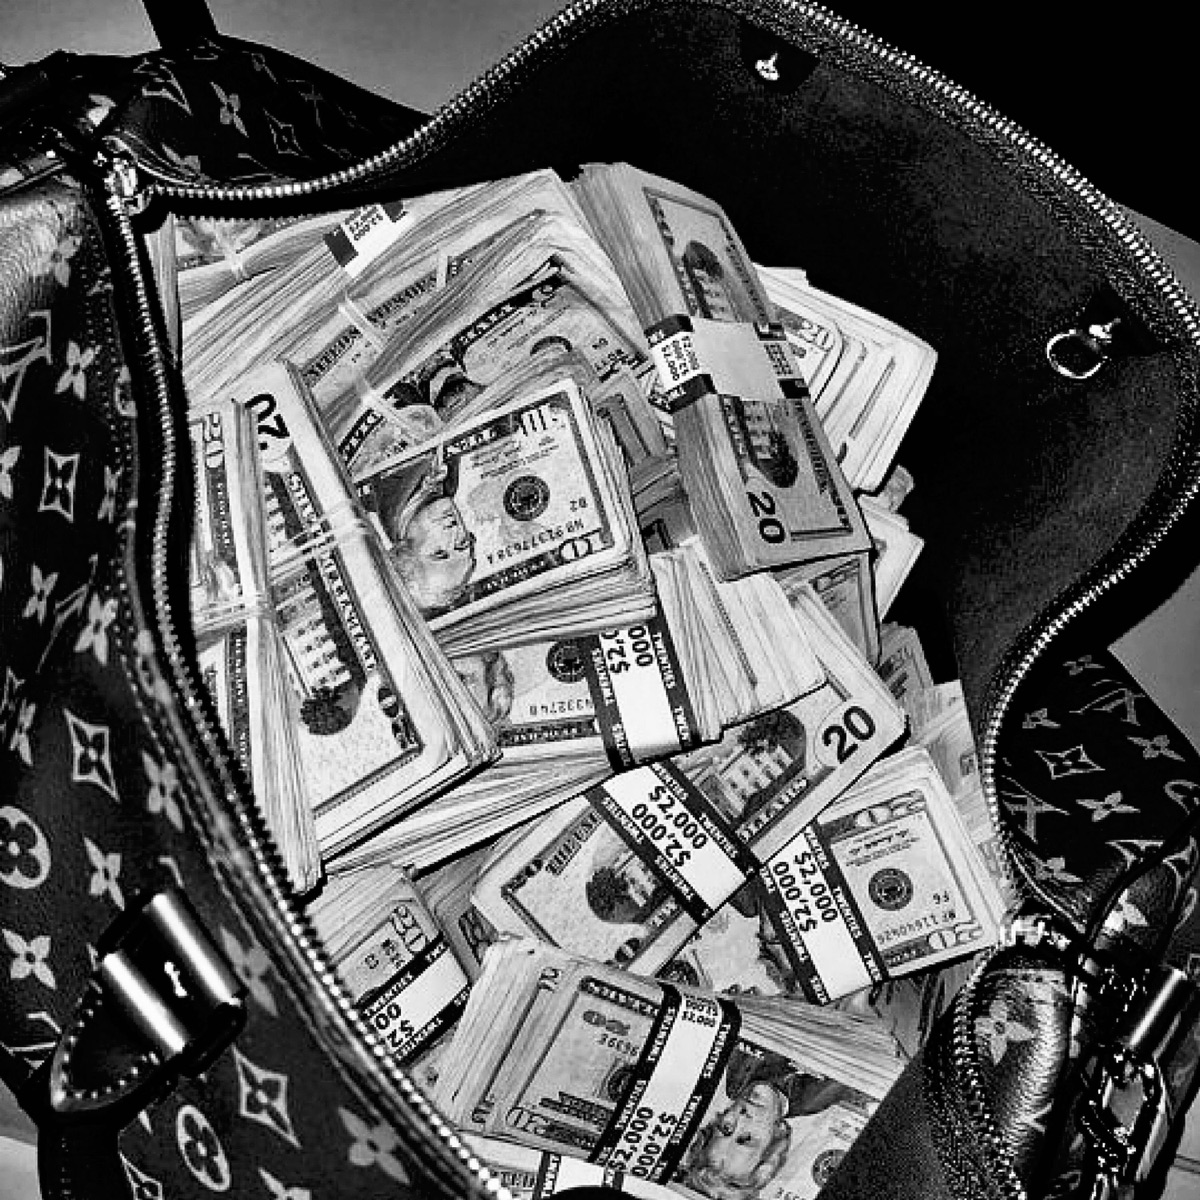 designer bag full of cash